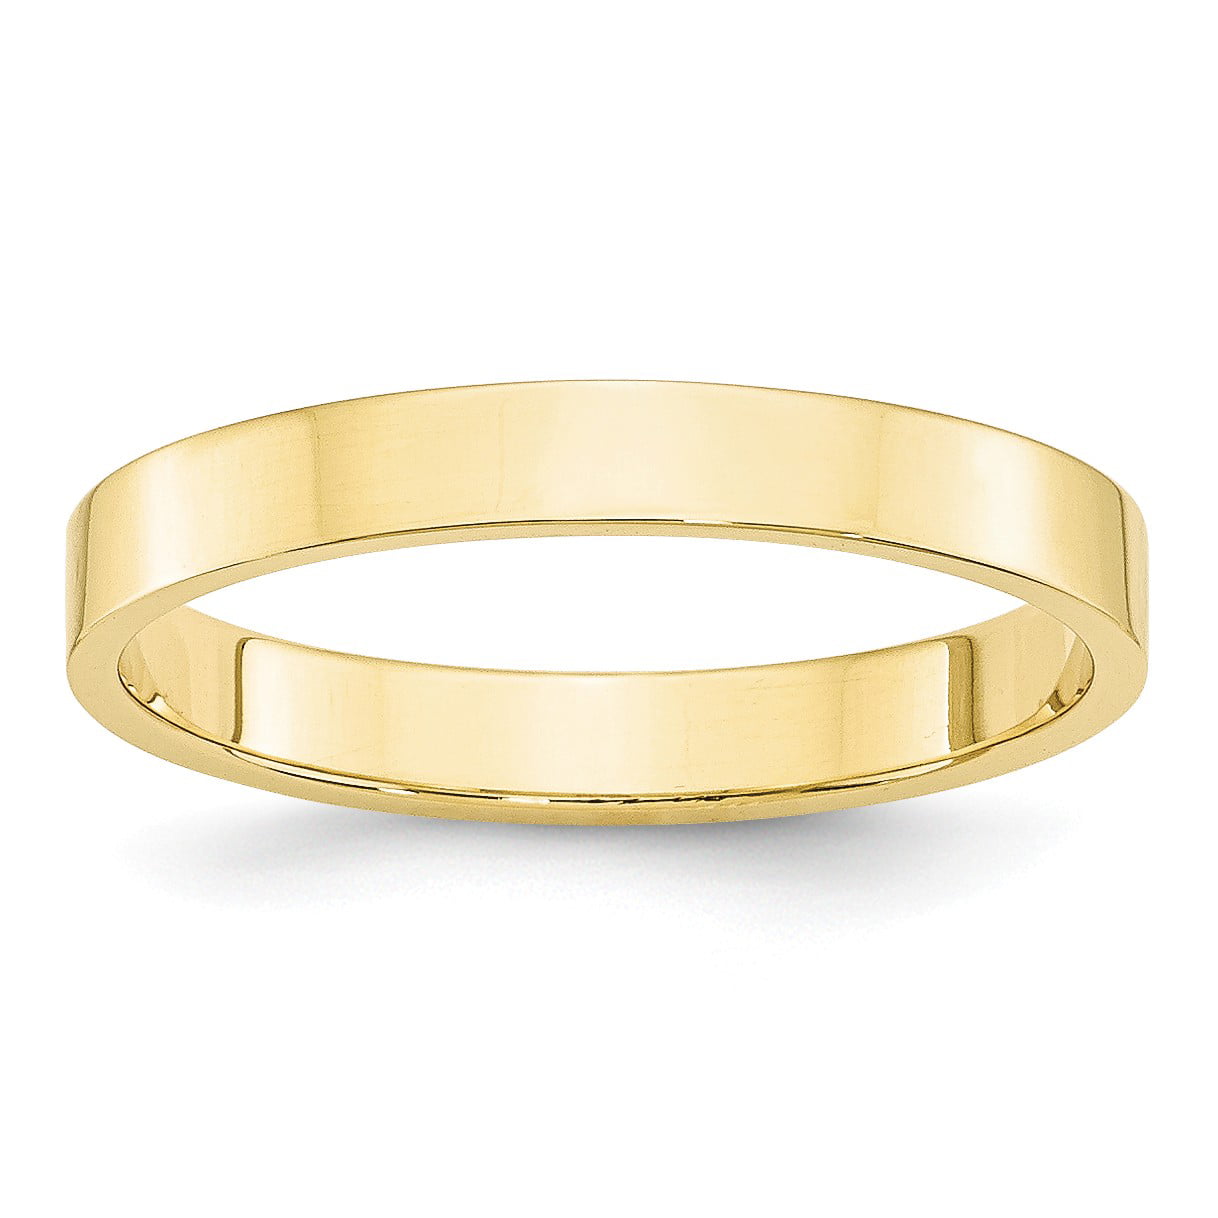 Size 10.5 Bonyak Jewelry 10k Yellow Gold 1.5 mm Flat Band